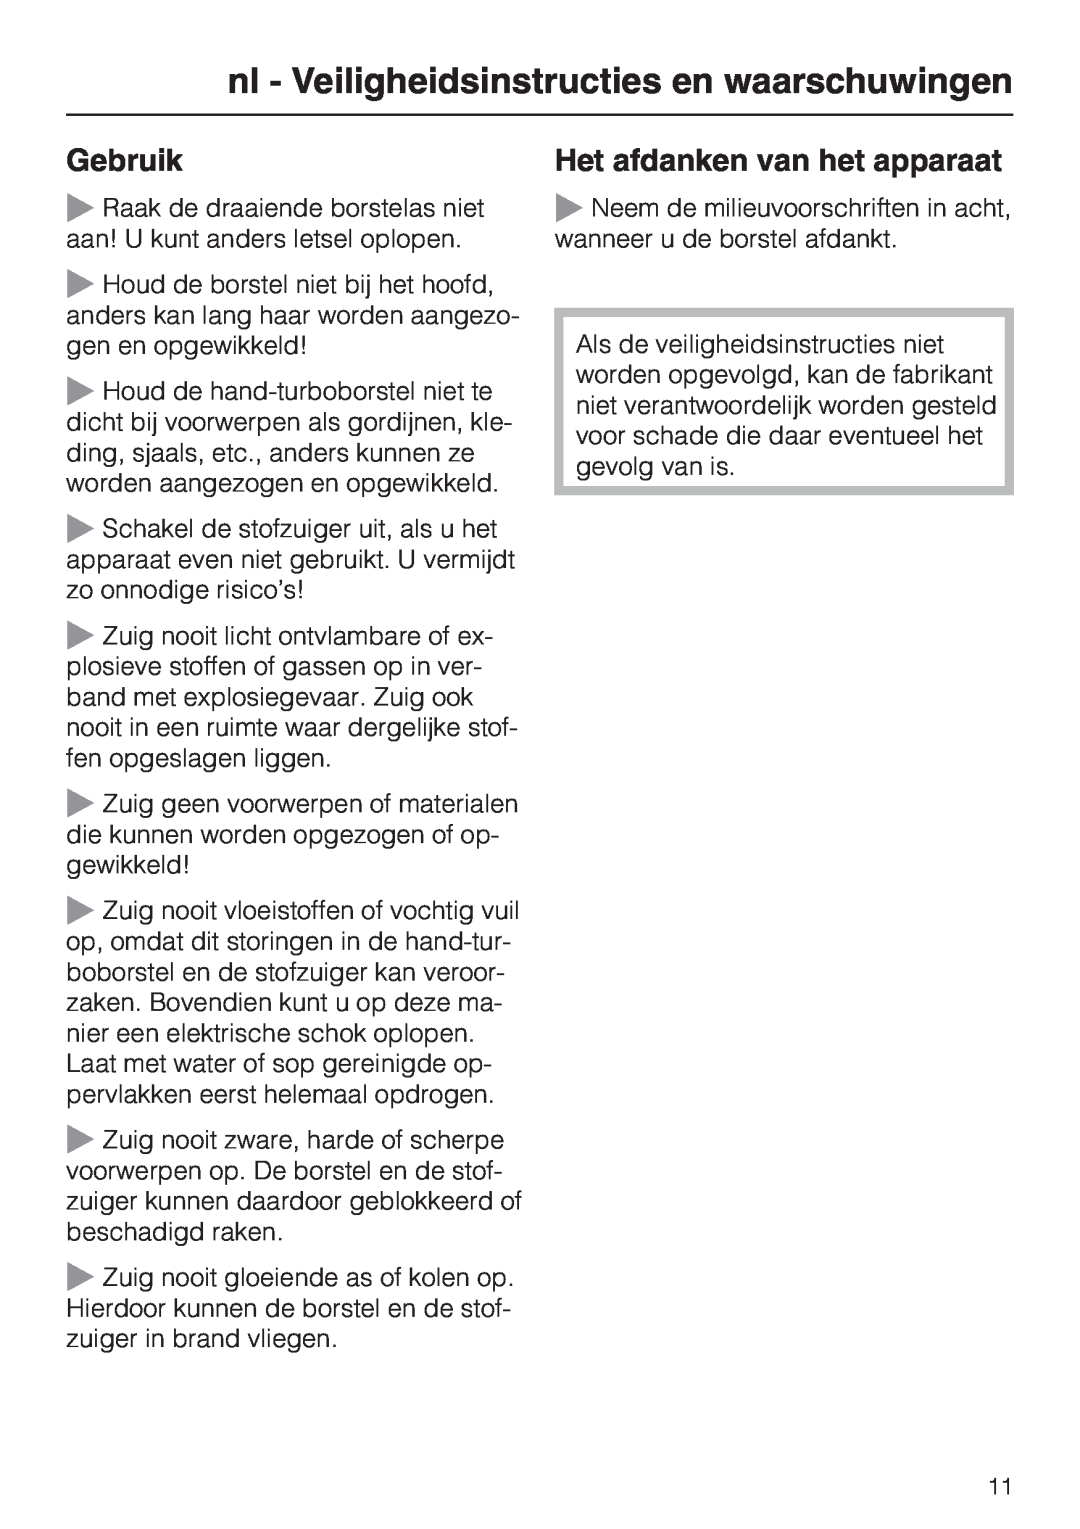 Miele STB 101 manual nl - Veiligheidsinstructies en waarschuwingen, Gebruik, Het afdanken van het apparaat 